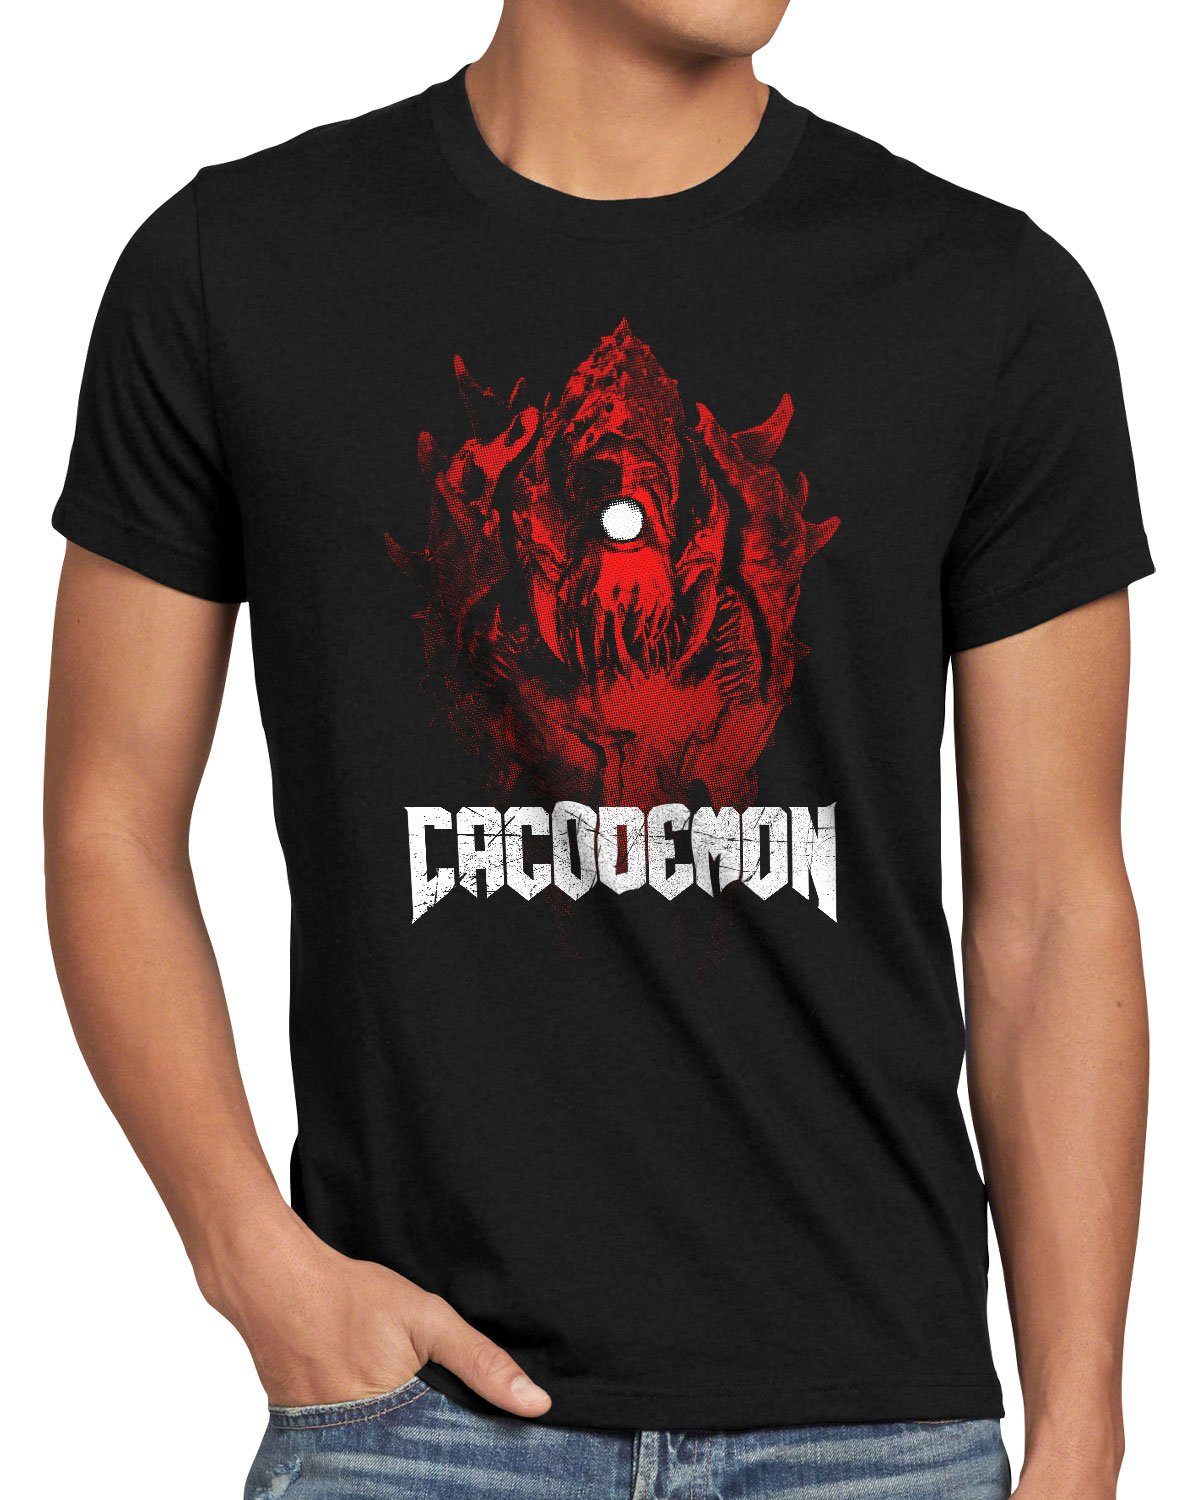 ego pc shooter Print-Shirt Cacodemon quake style3 T-Shirt multiplayer doom Herren